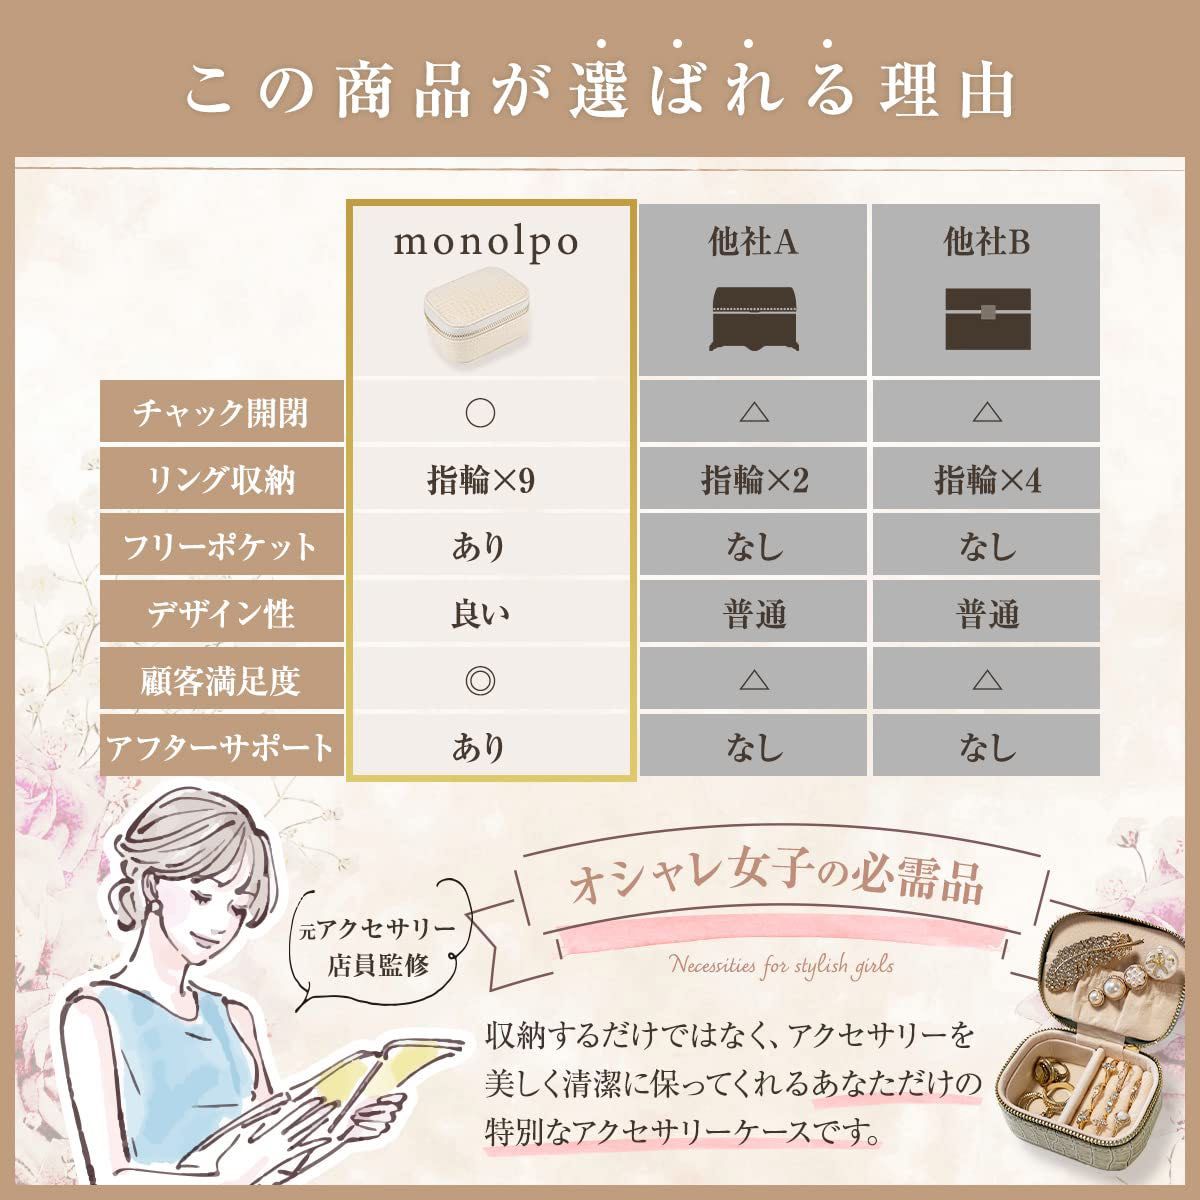 【monolpo】アクセサリーケース 携帯用 ジュエリーボックス 大容量